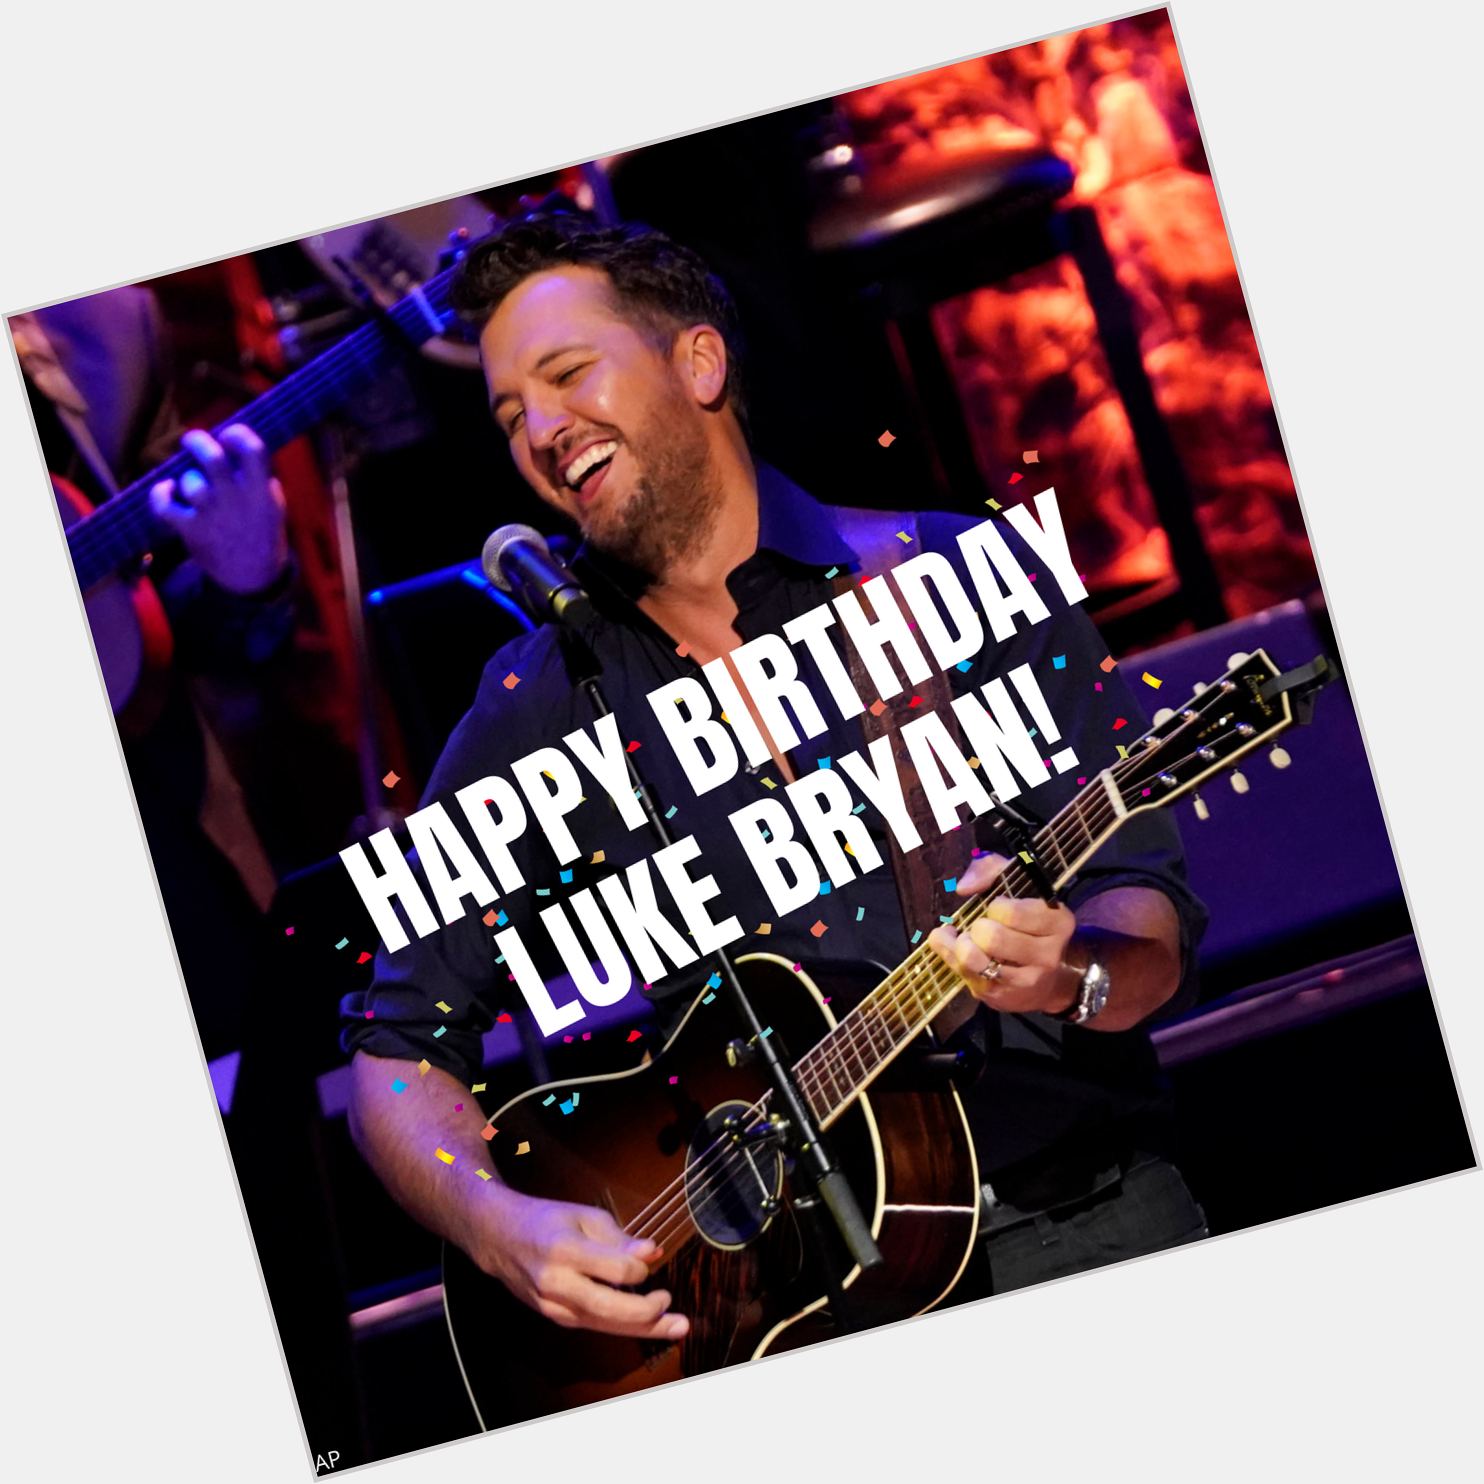 Happy birthday, Luke Bryan! The country star turns 44 today! 